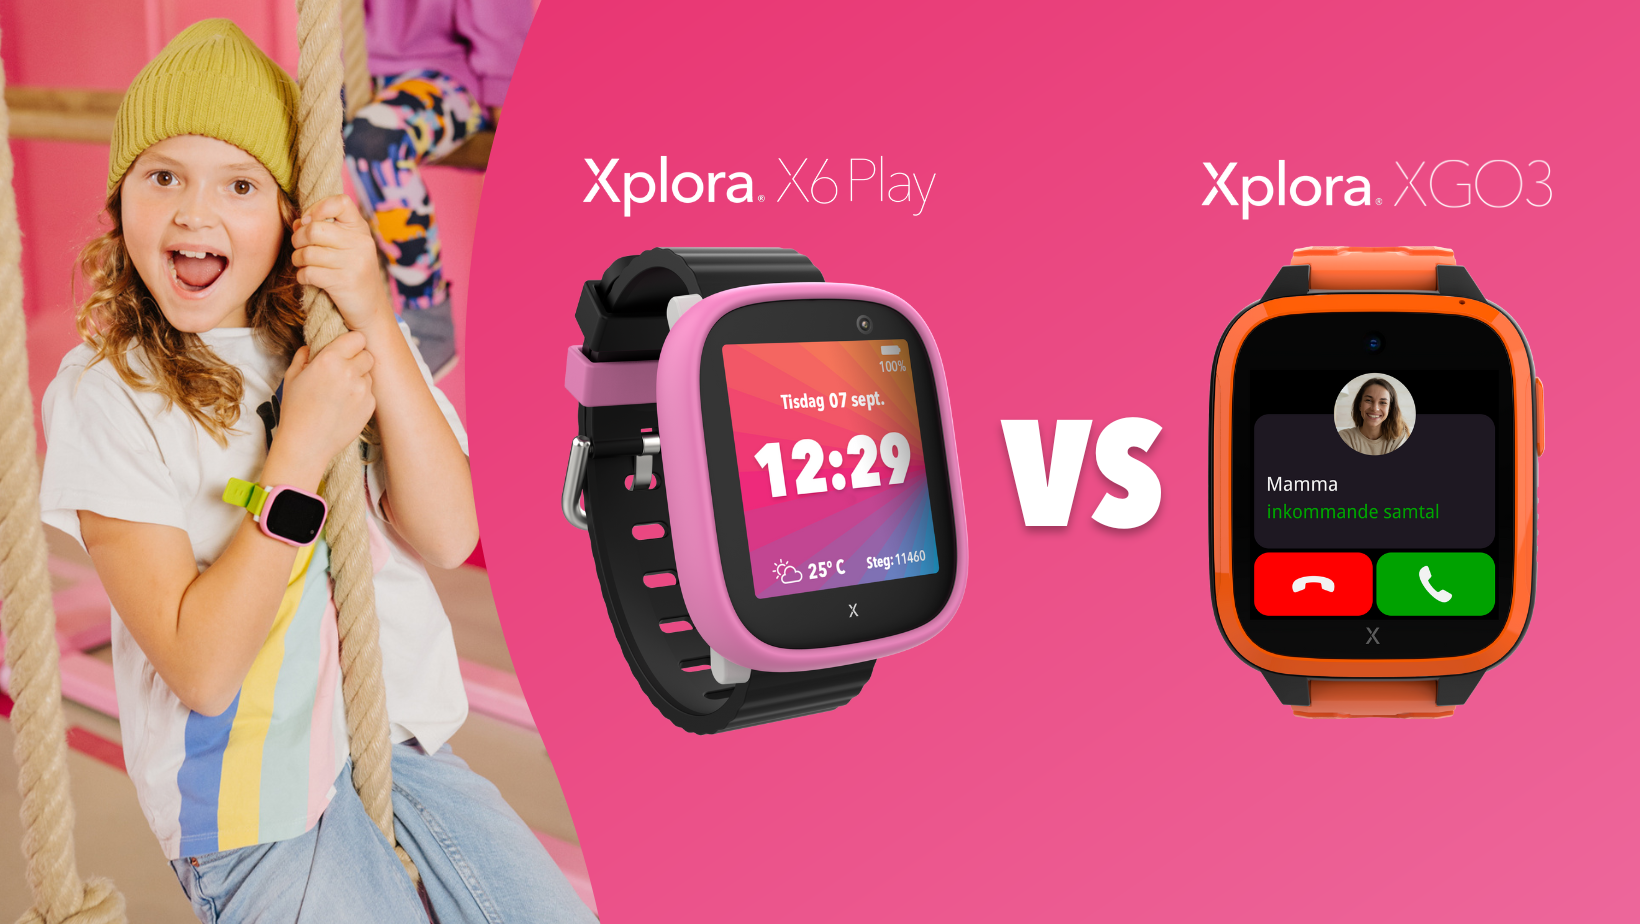 Skillnaden mellan Xploras modeller X6Play och XGO3